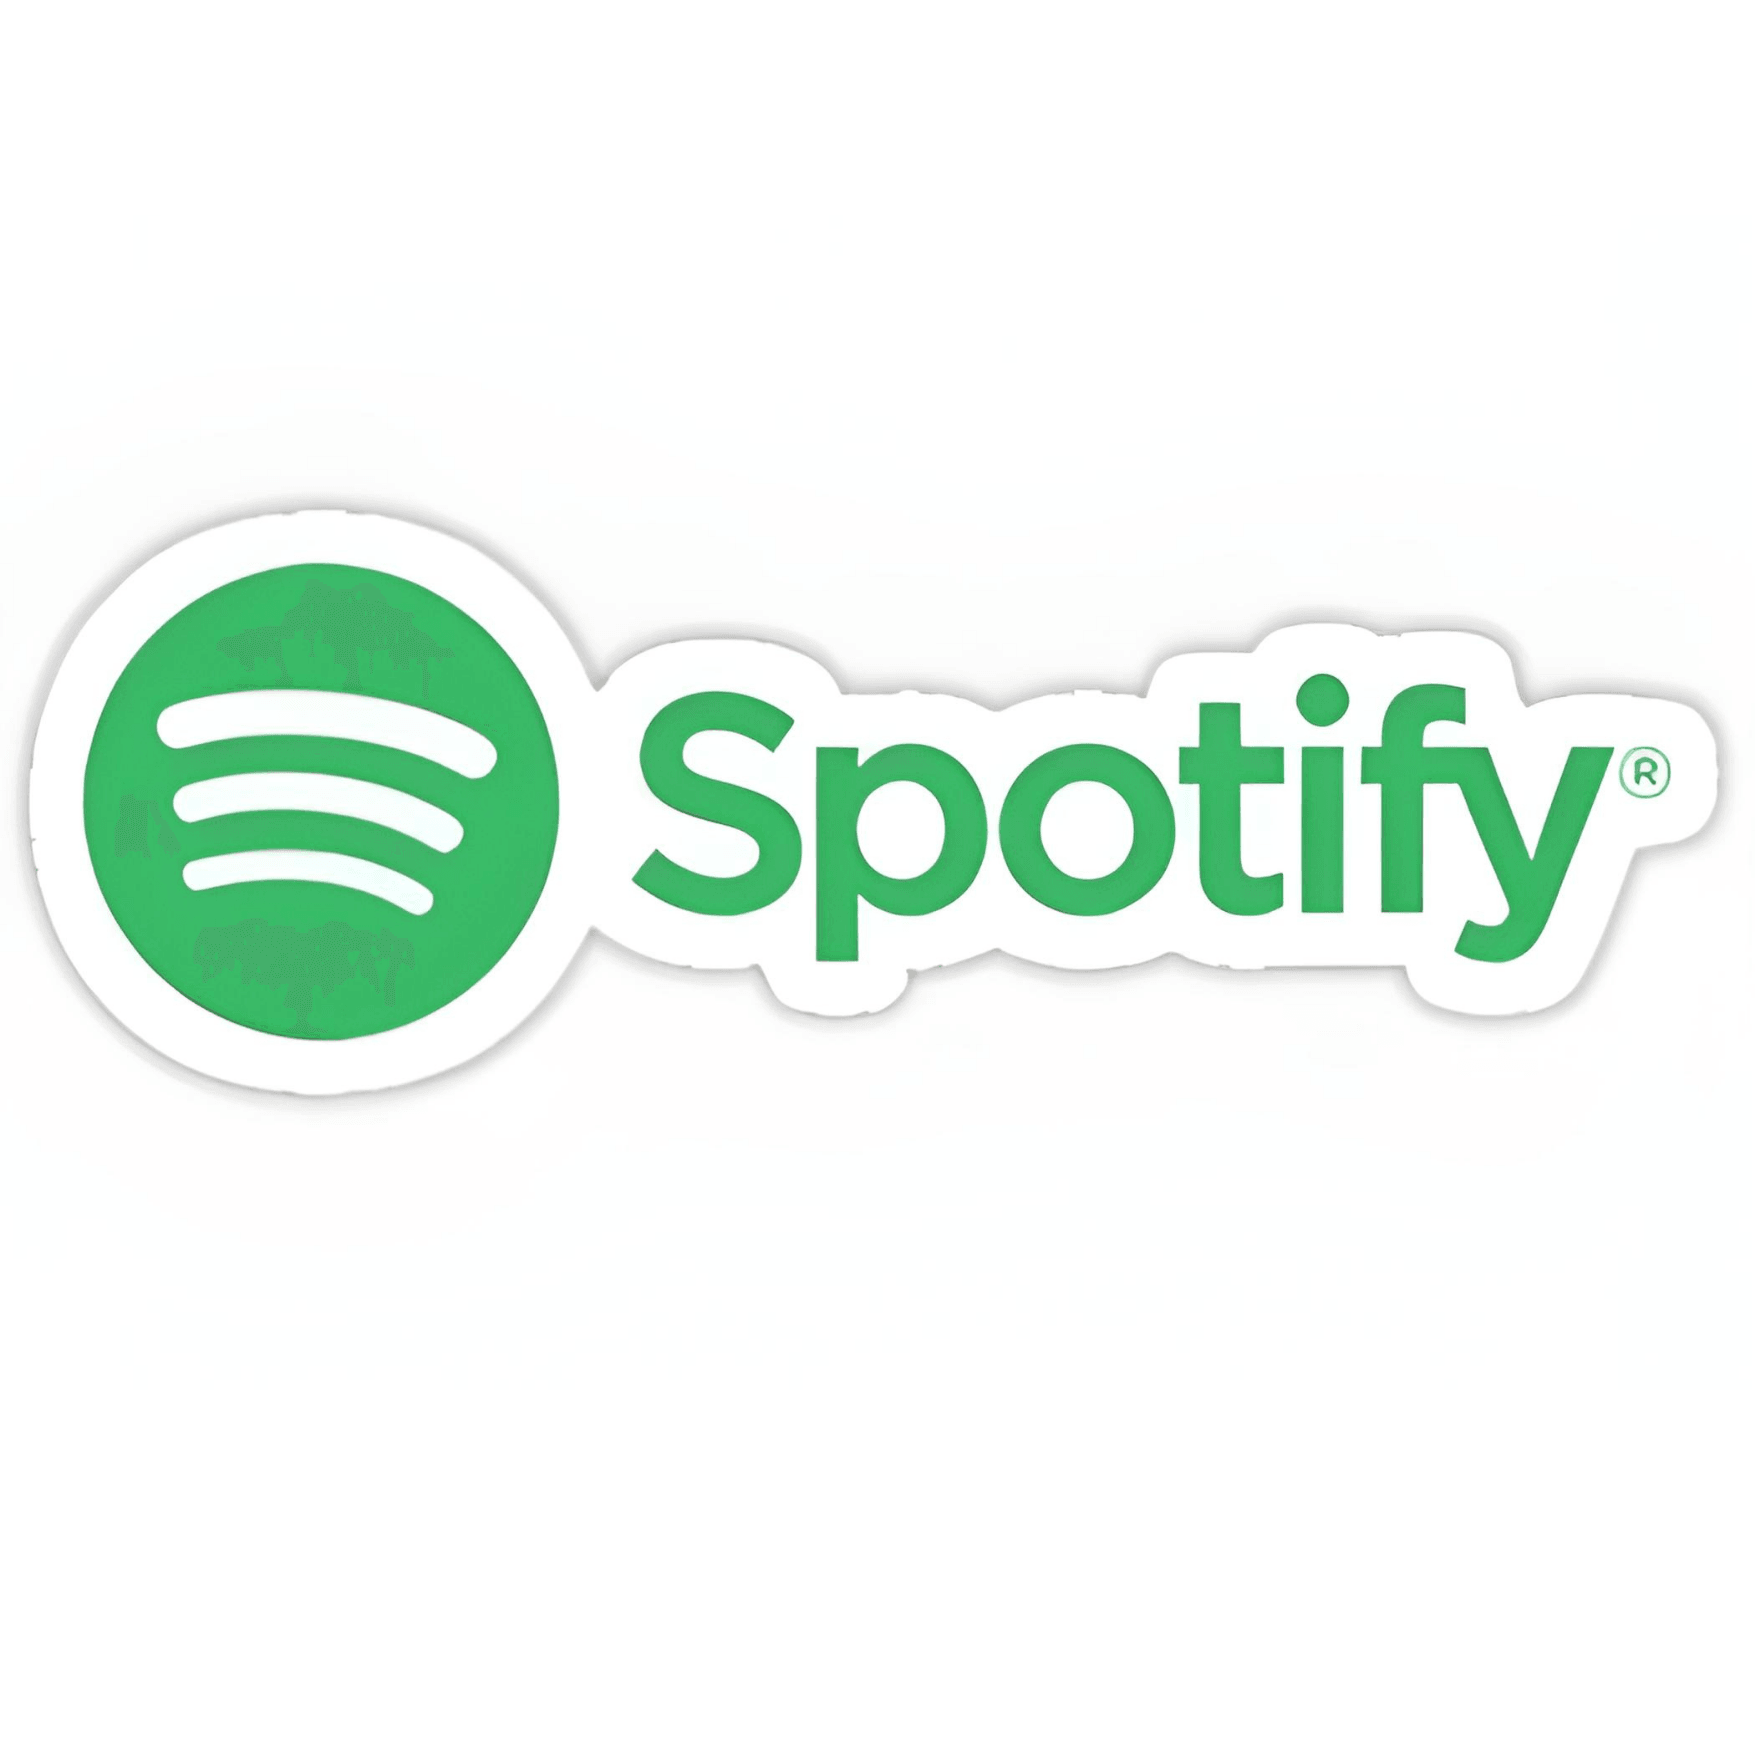 Spotify logo sticker 6cm 